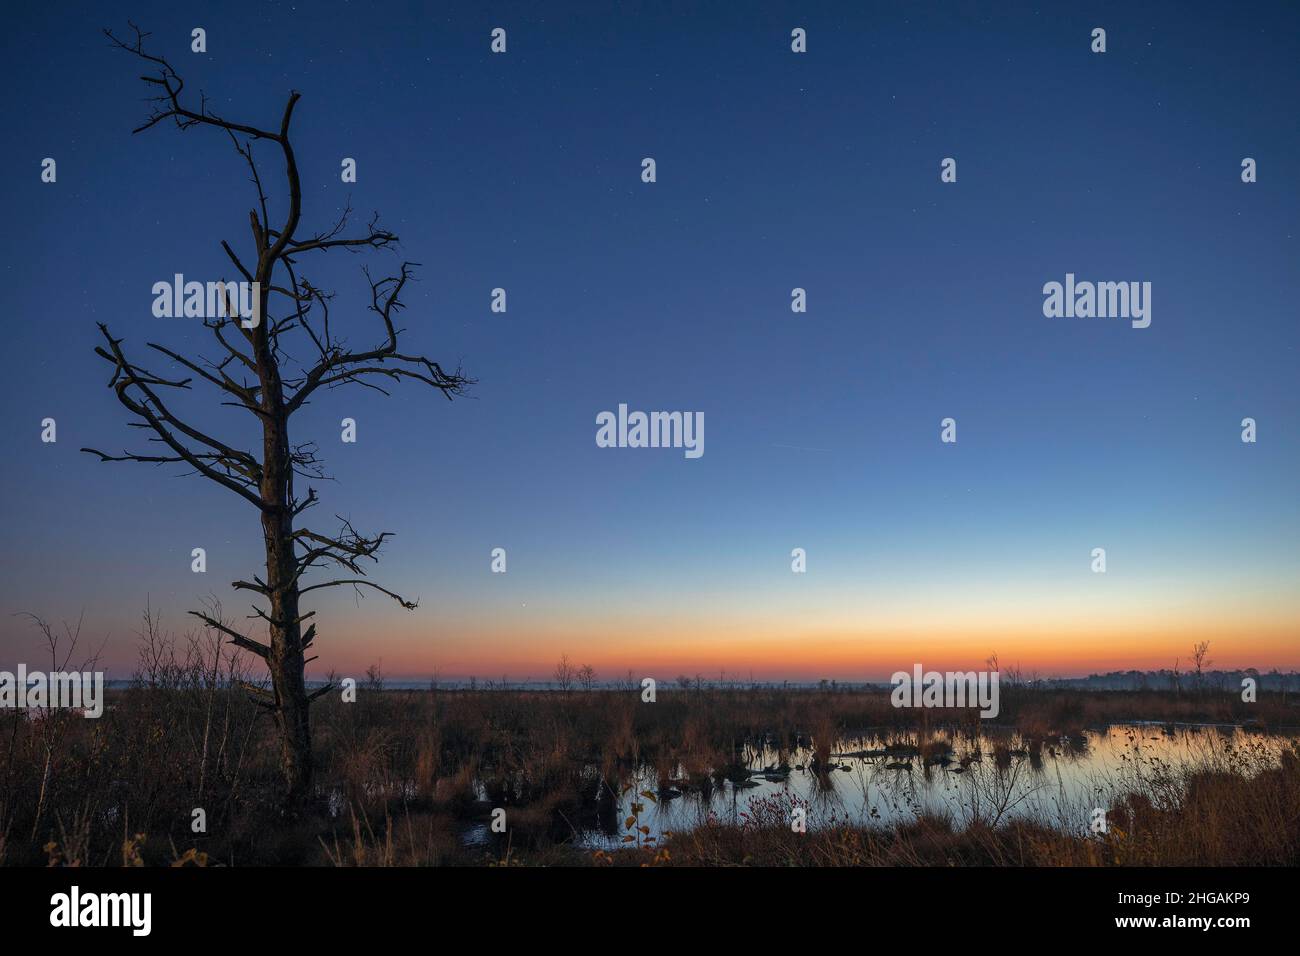 Goldenstedt Moor, Sonnenuntergang, erste Sterne am Himmel, alte Eiche am Rande eines Wasserkörpers, Niedersachsen, Deutschland Stockfoto